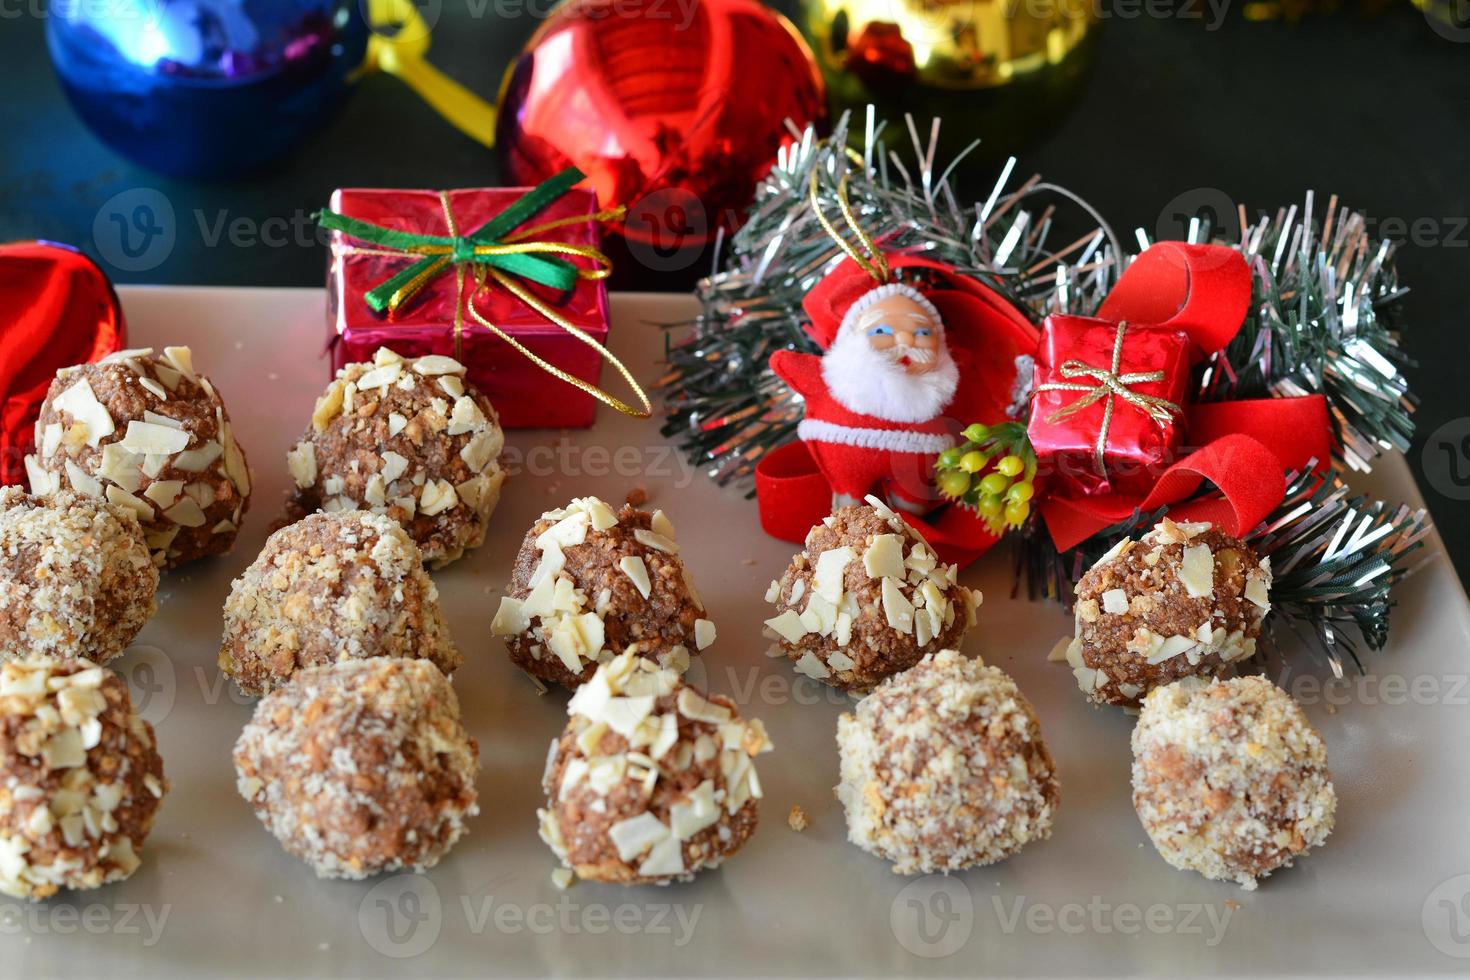 zelfgemaakte chocoladetruffels met noten kerst dessert foto